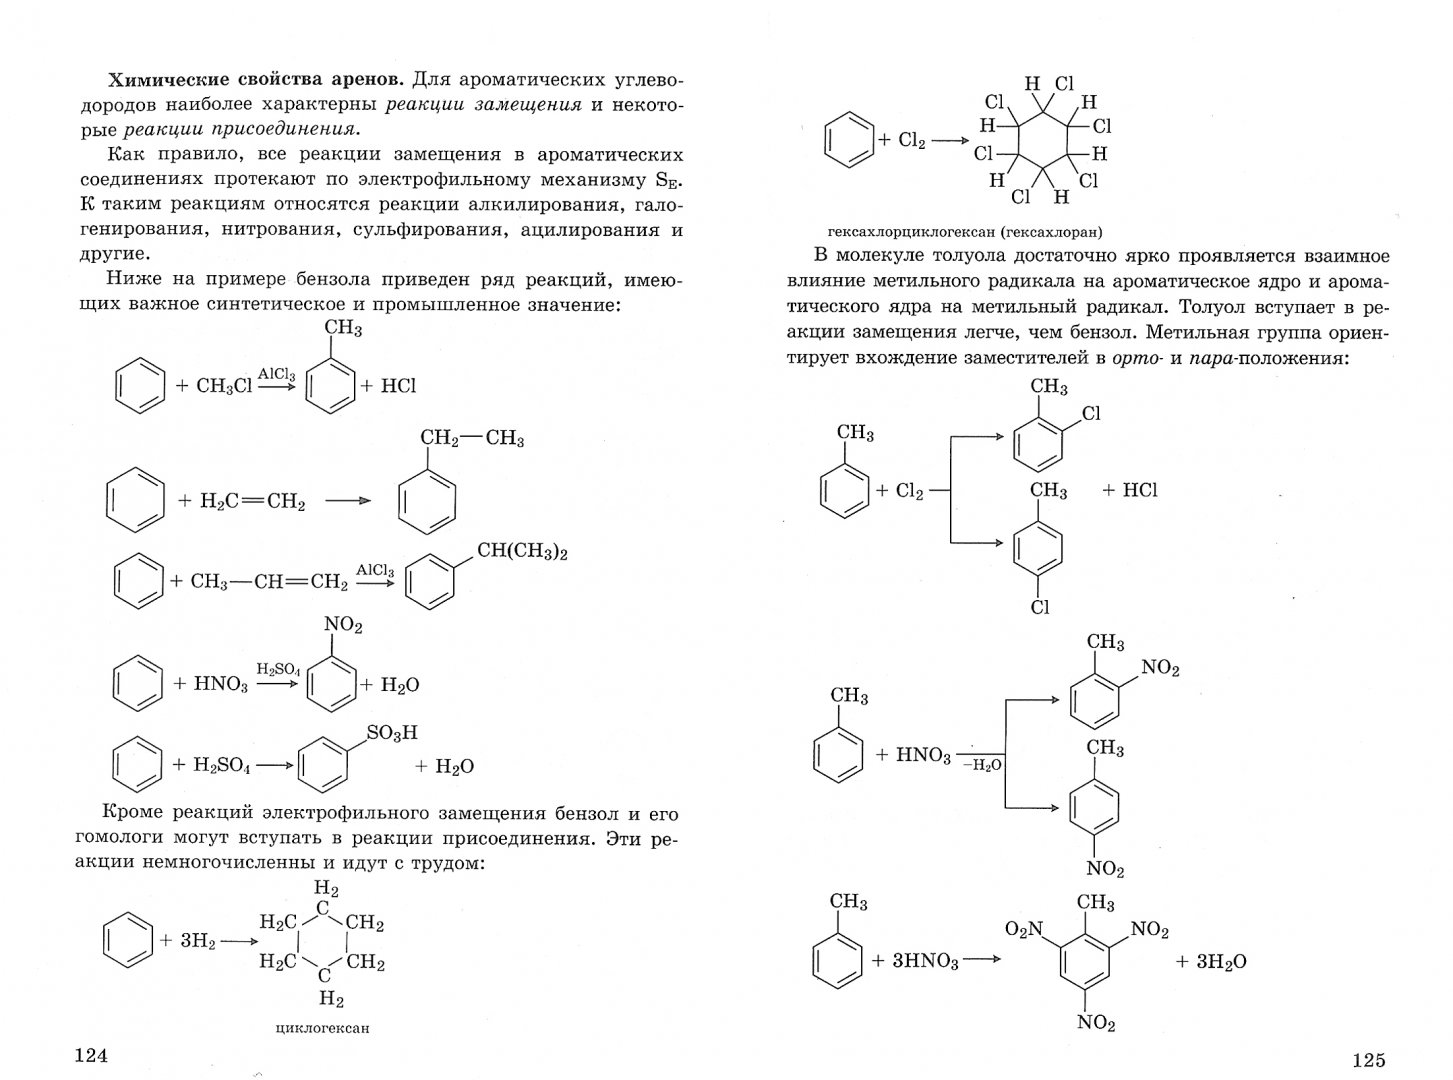 Типы реакций арен. Химическиесвойсва аренов. Химические свойства аренов. Химические свойства аренов таблица с примерами. Все химические свойства аренов.